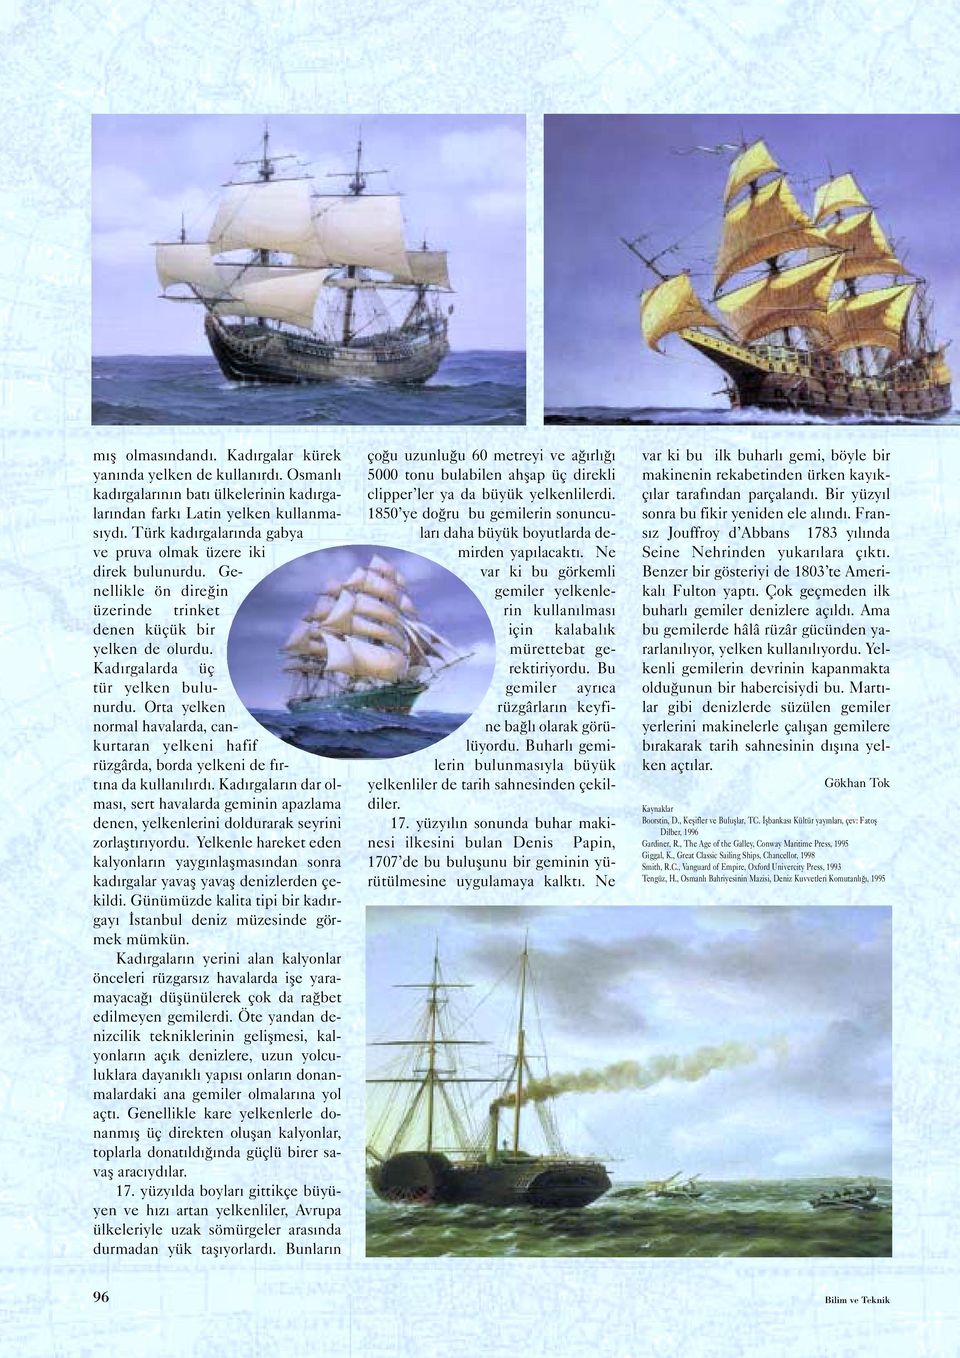 Orta yelken normal havalarda, cankurtaran yelkeni hafif rüzgârda, borda yelkeni de fırtına da kullanılırdı.